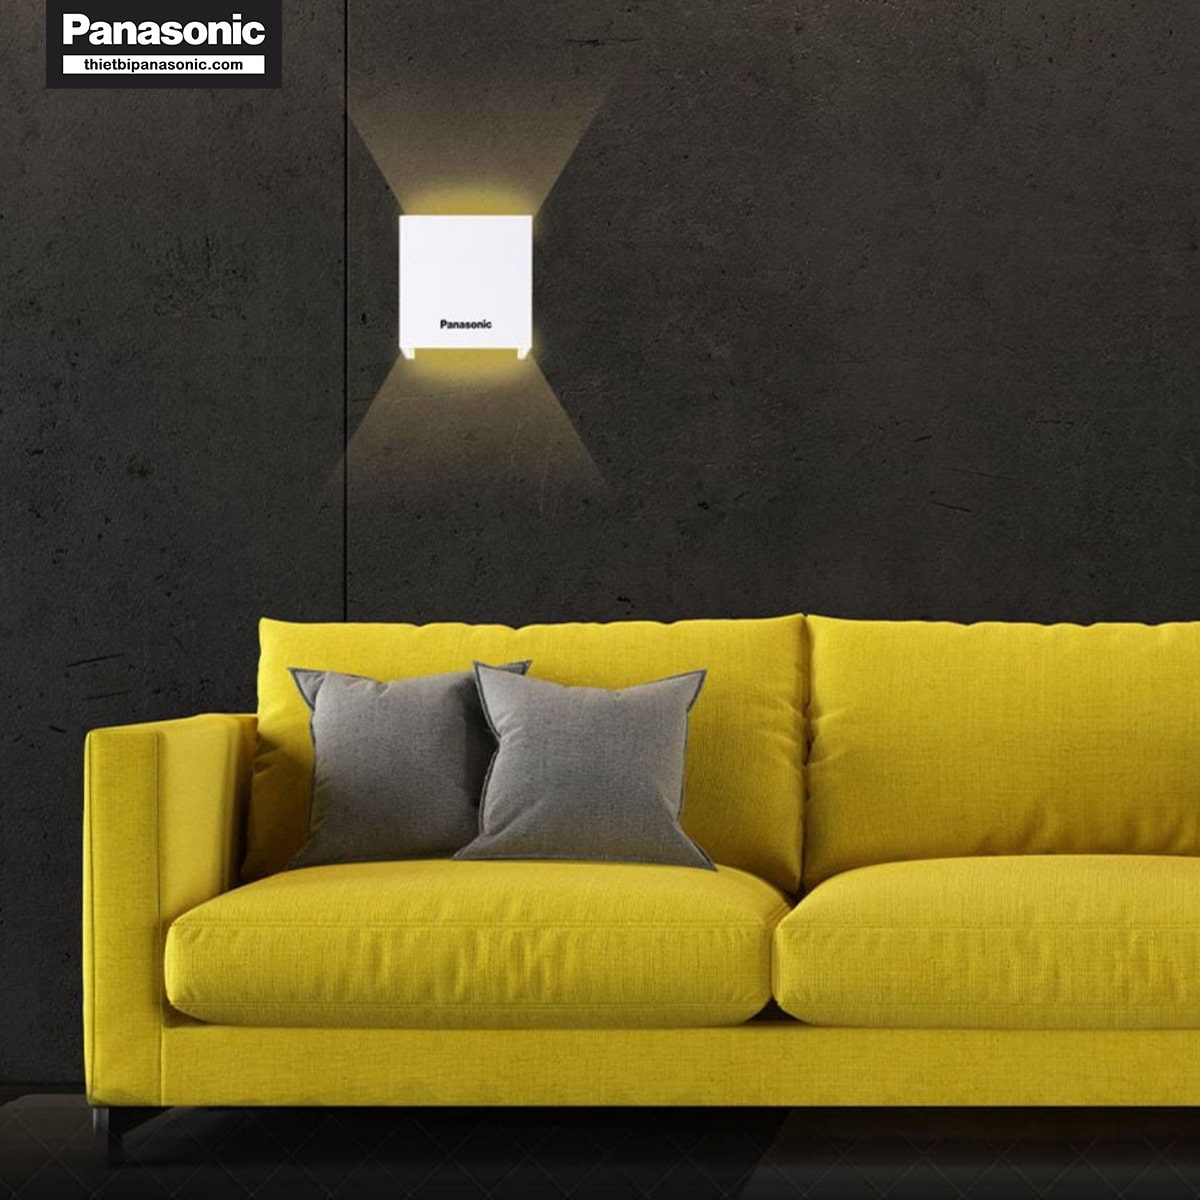 Đèn hắt tường Panasonic HHBQ1005W88 Màu Trắng có tuổi thọ bền bỉ lên đến 20.000 giờ